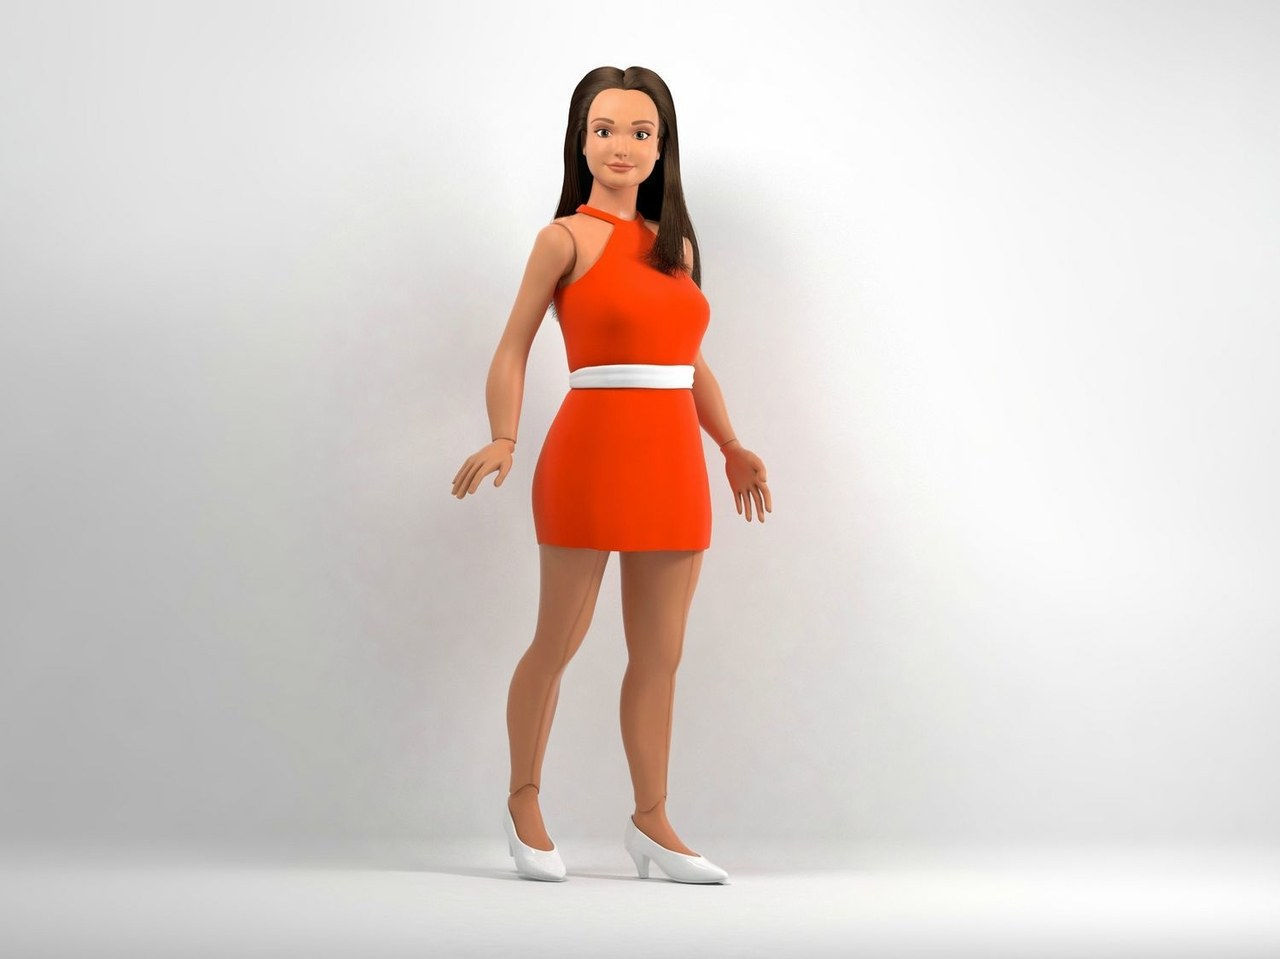 Barbie average body image